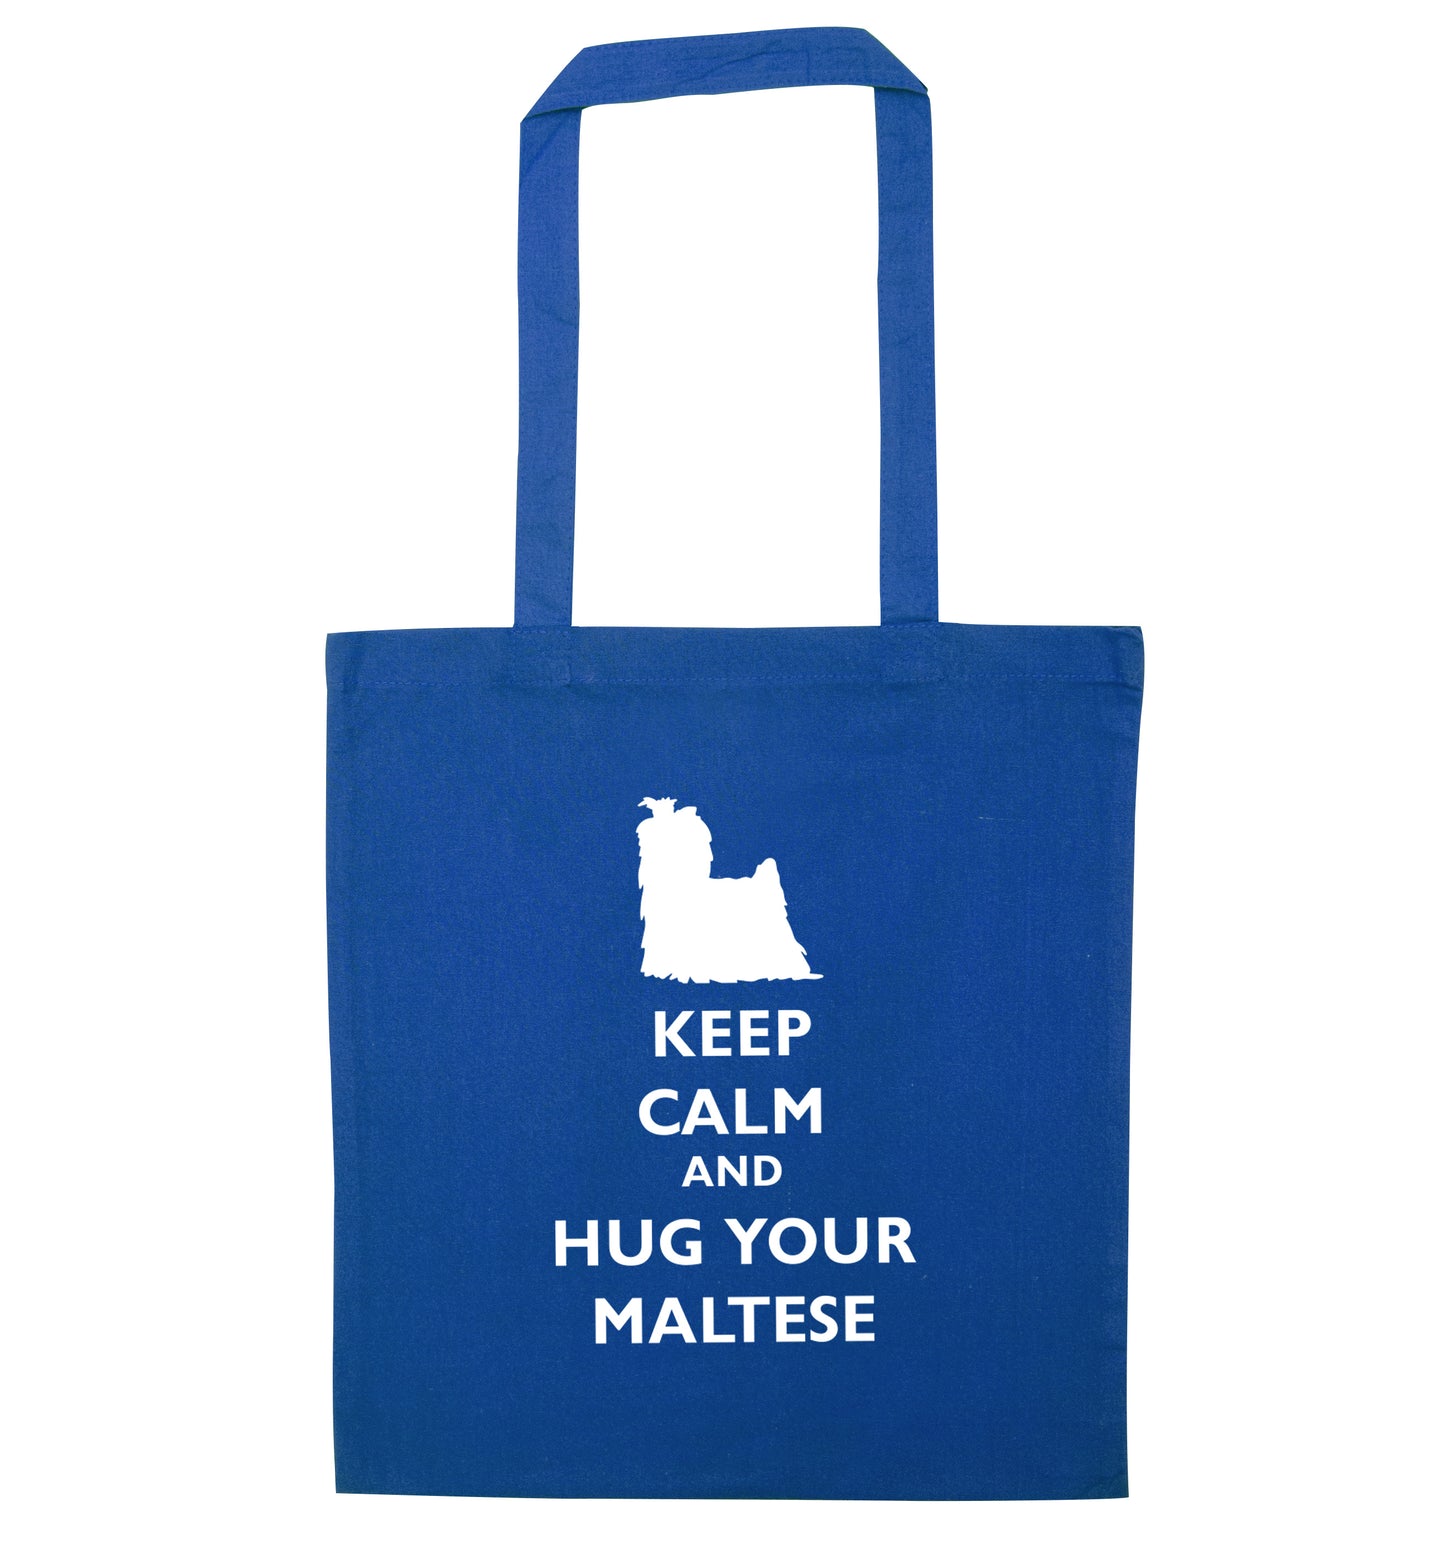 Keep calm and hug your maltese blue tote bag